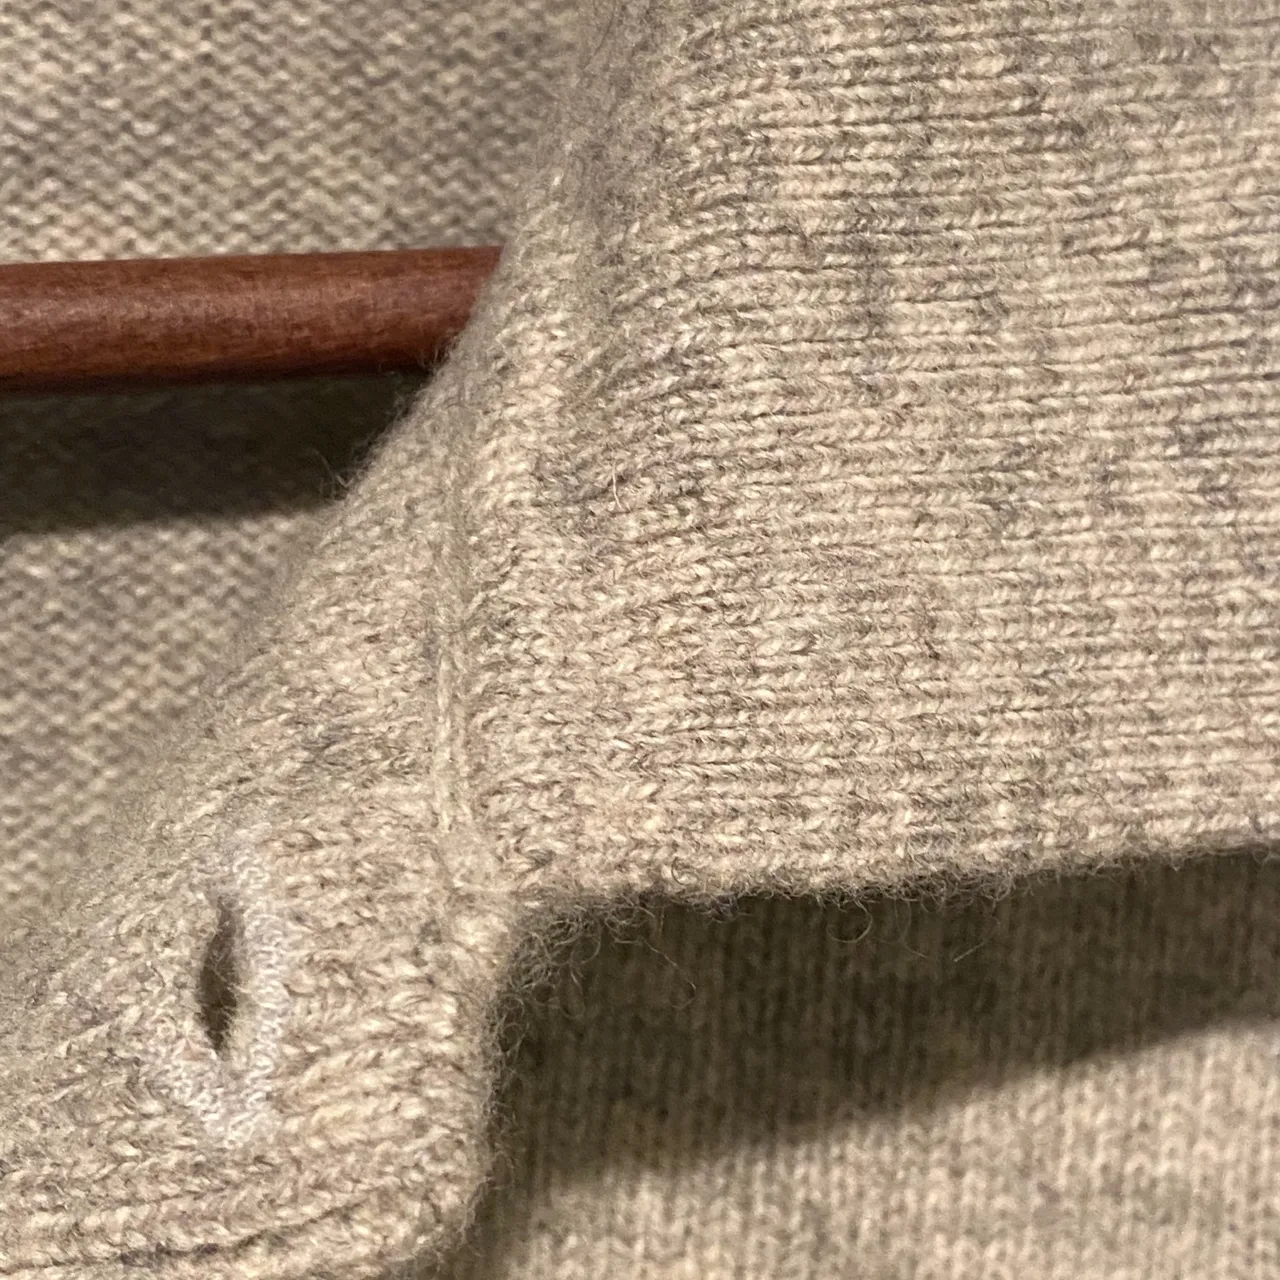 Ralph Lauren sweater knit polo shirt photo 6